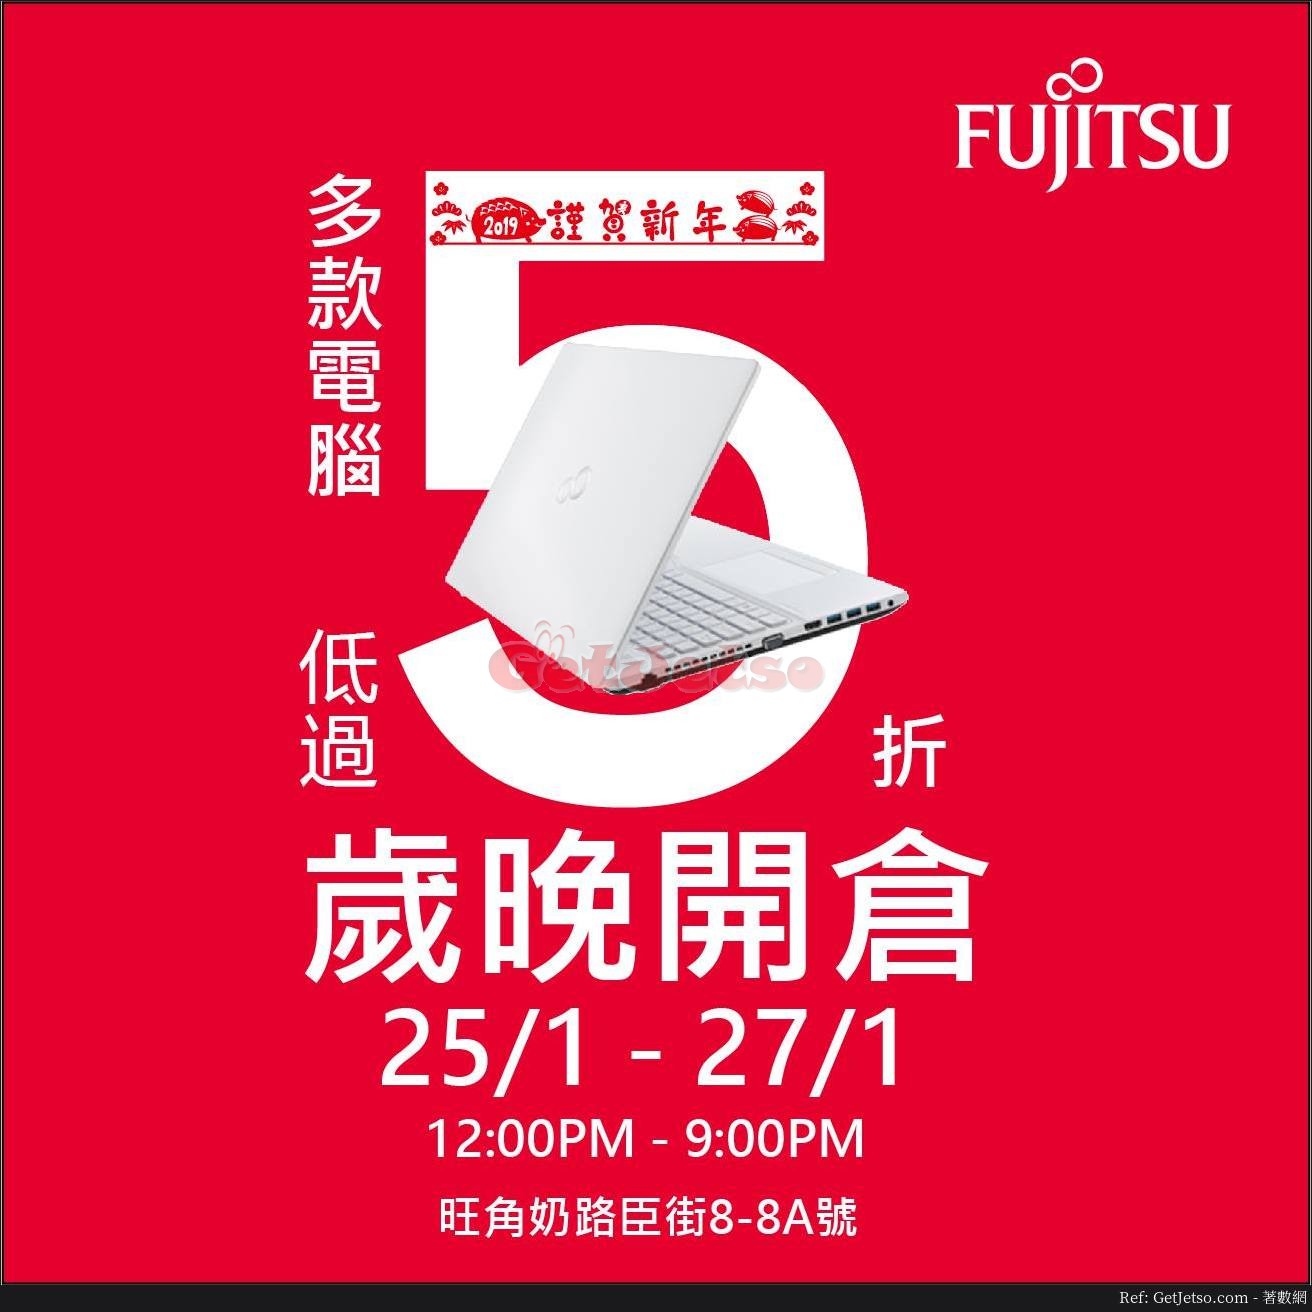 Fujitsu 低至5折歲晚開倉優惠(19年1月25-27日)圖片1